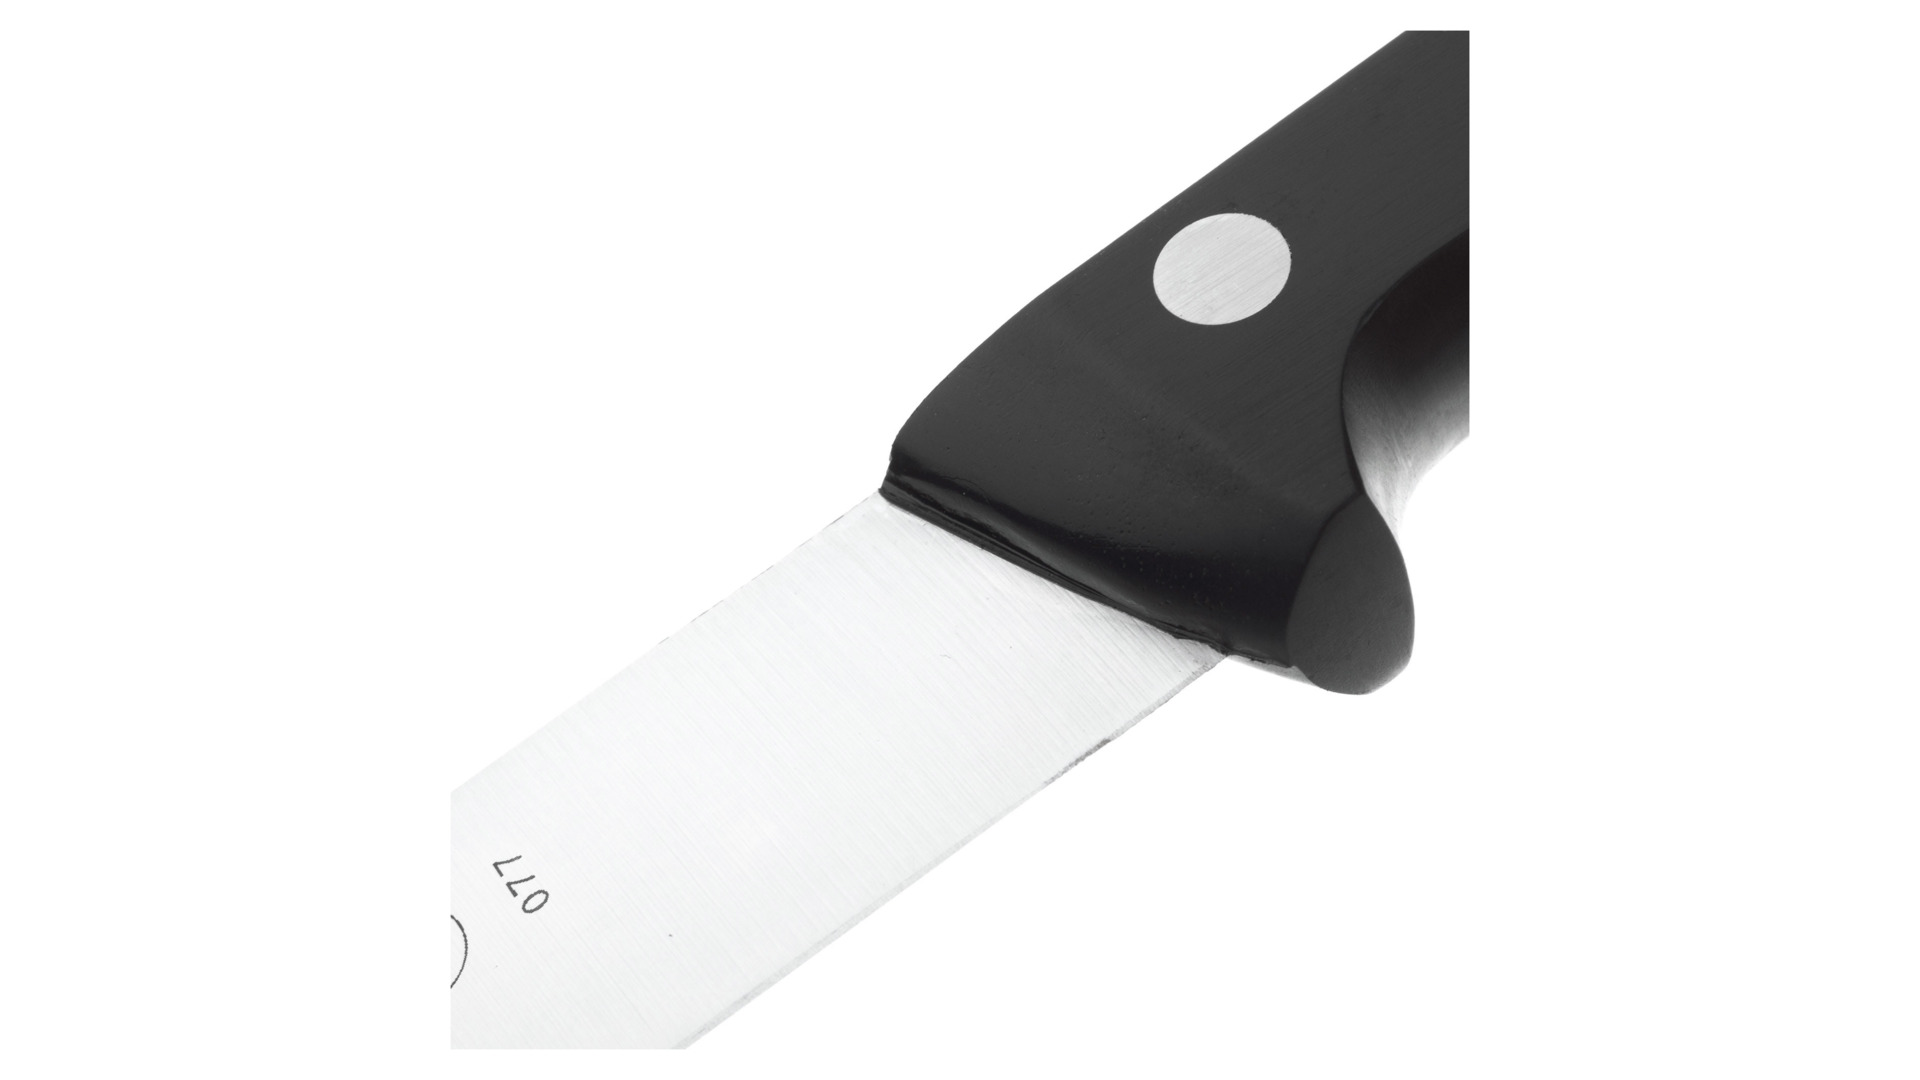 Нож филейный для рыбы Arcos Universal 17 см